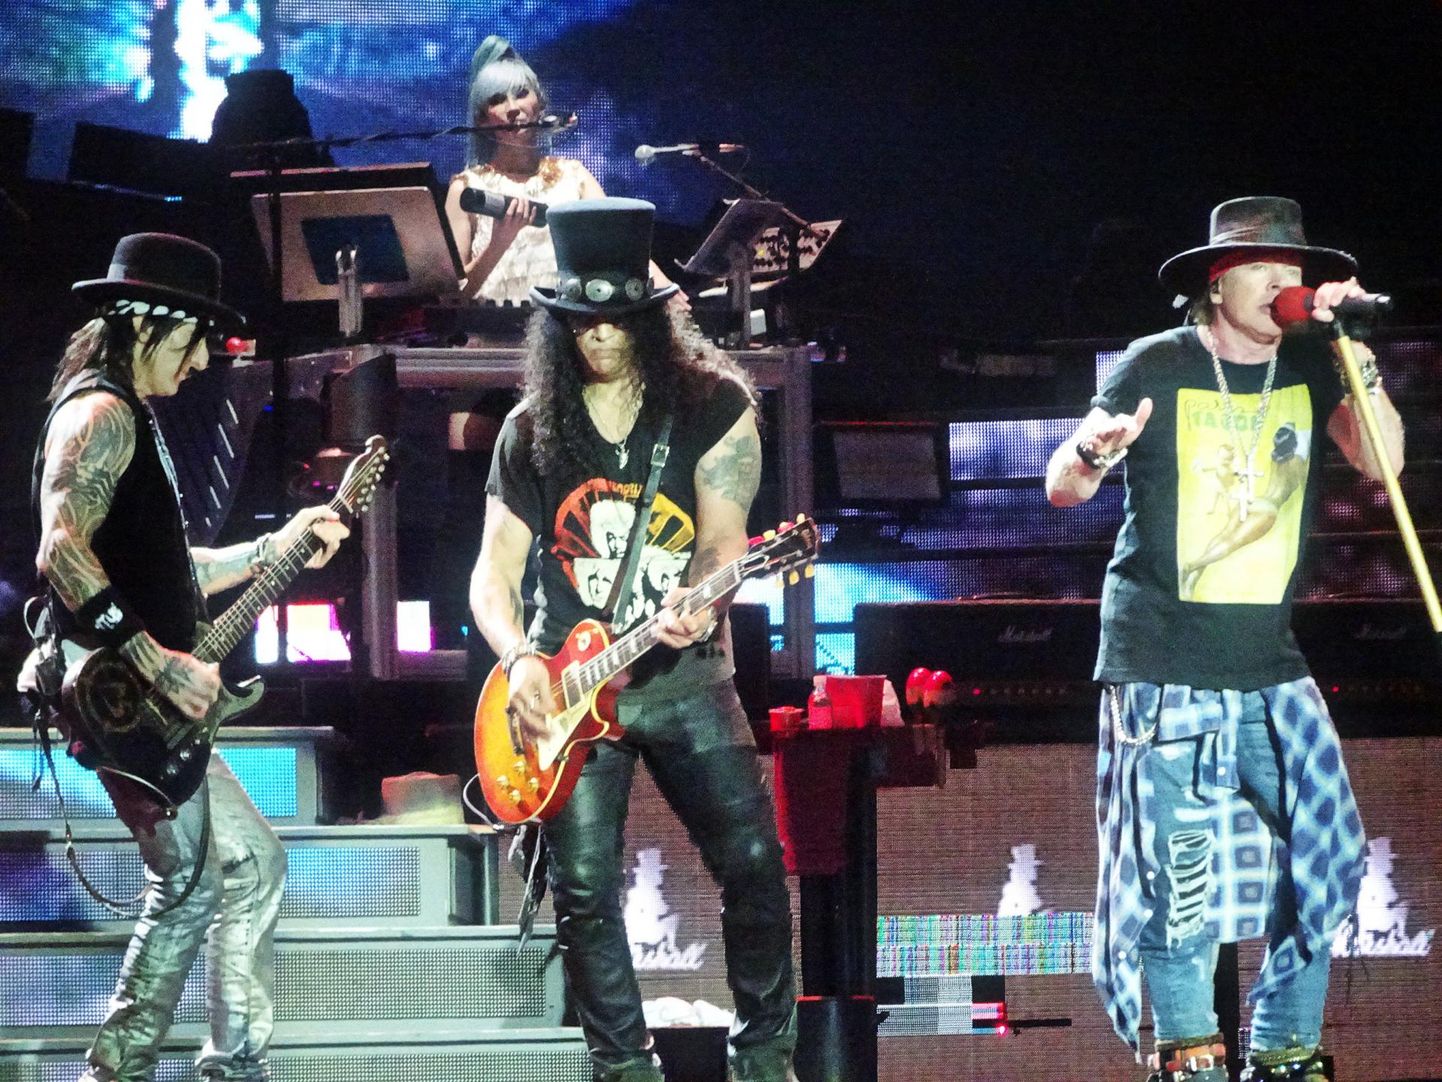 Guns N’ Roses Tallinna laulukaare all. Kolm tundi ja 15 minutit. Kokku 32 pala, kamaluga hitte, kavereid ja vähemtuntud lugusid sekka.